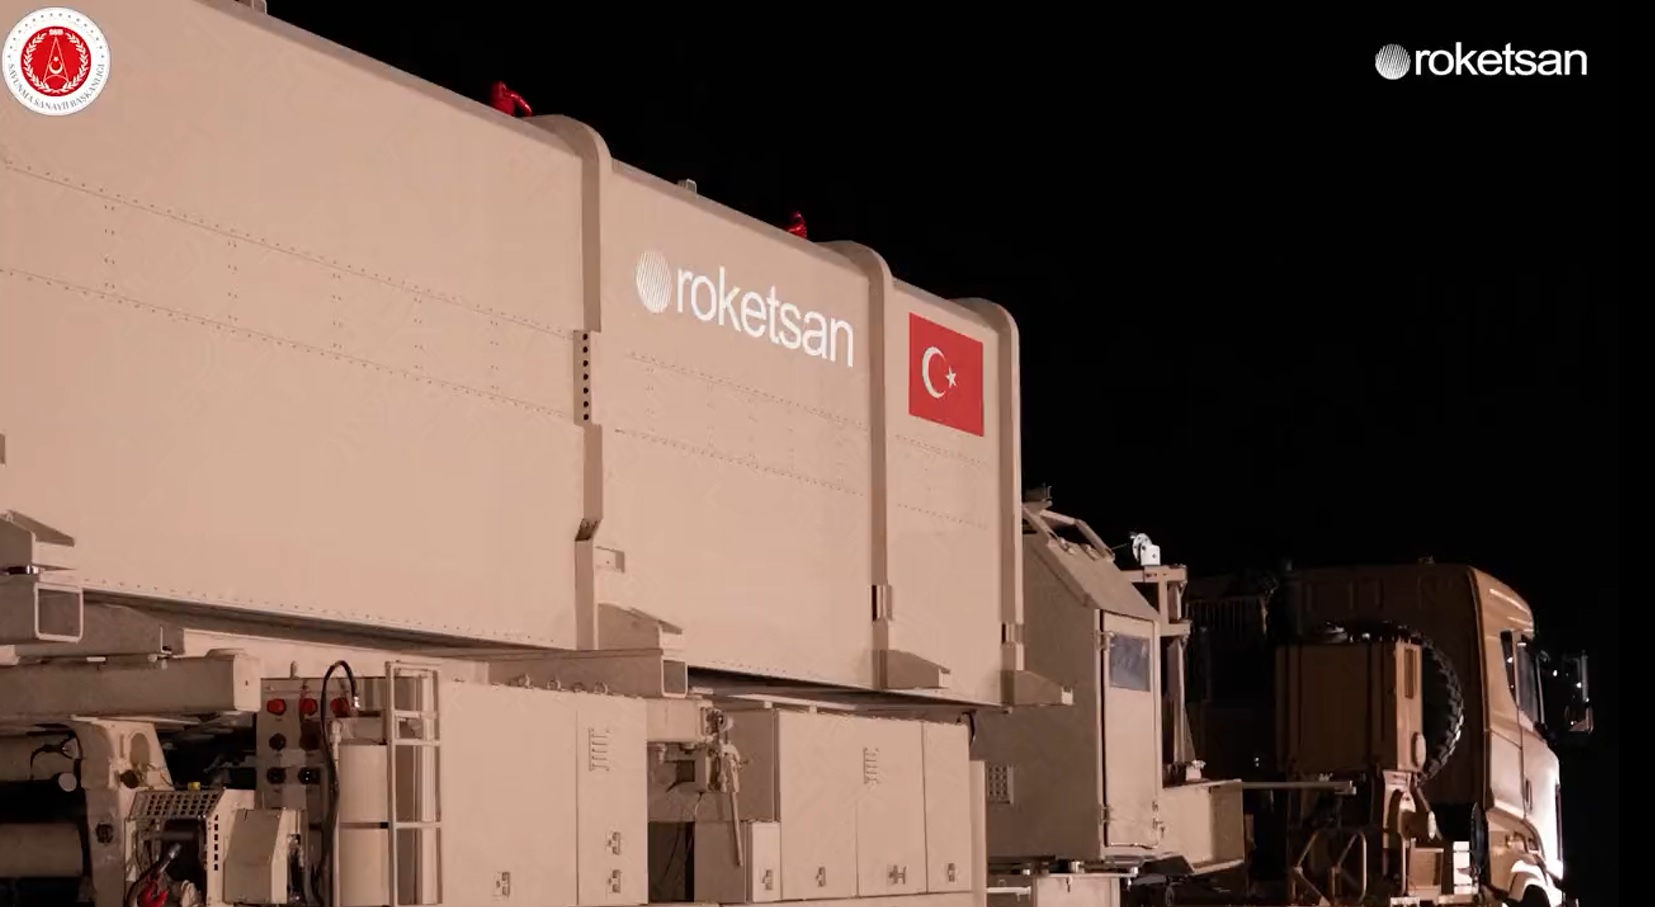 Roketsan представила CENK - першу турецьку балістичну ракету середньої дальності, яка зможе вражати цілі на відстані до 1000 км